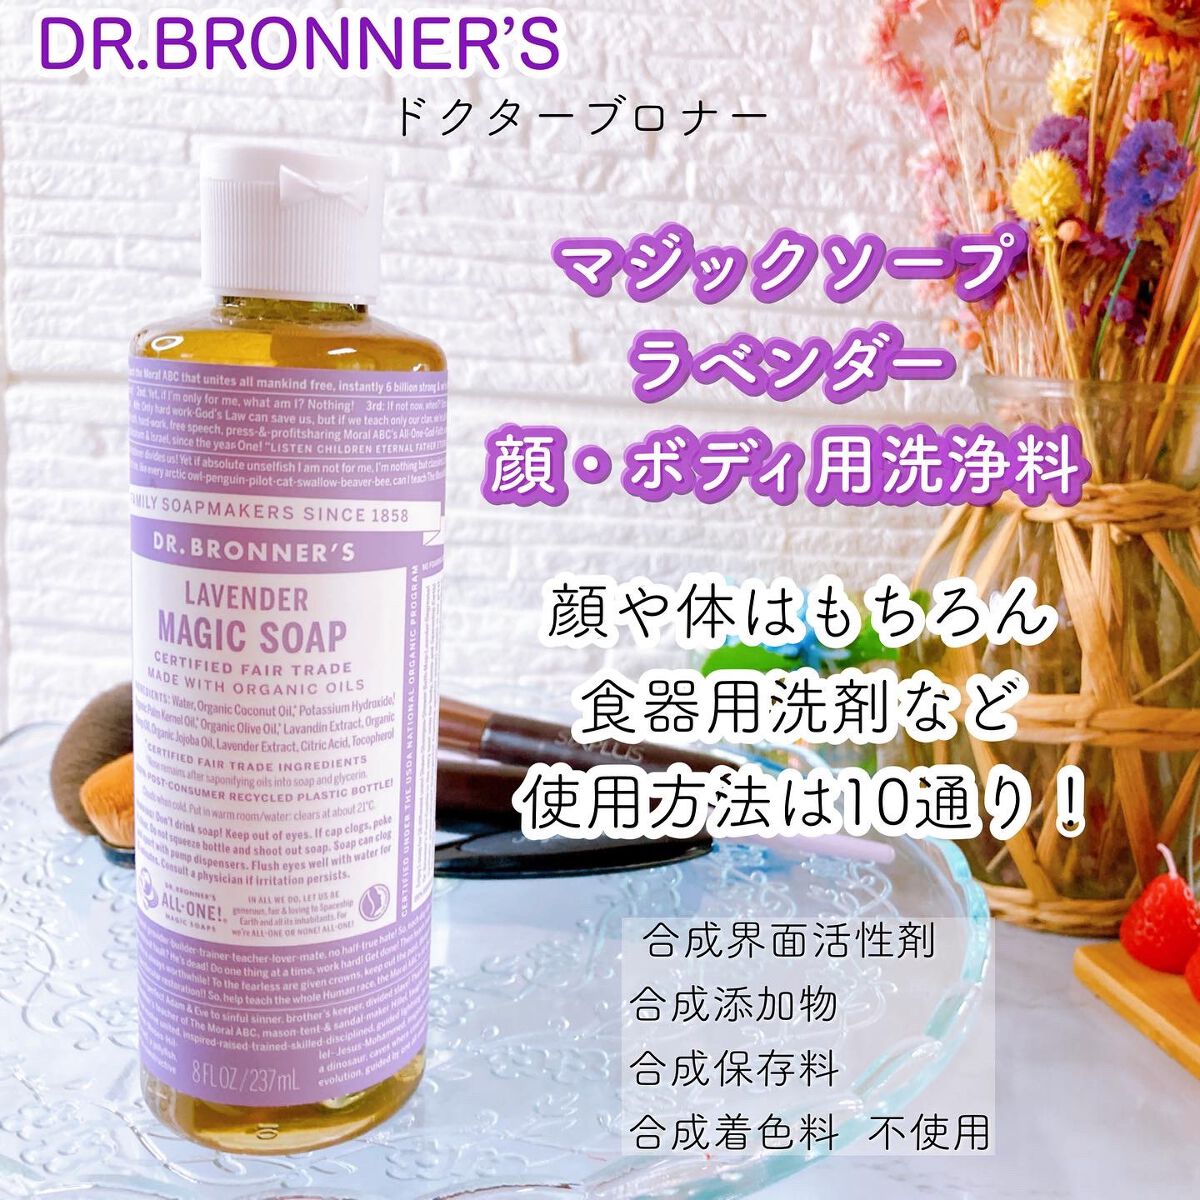 ドクターブロナー☆マジックソープ☆ラベンダーアメリカ保存方法 - 洗顔料